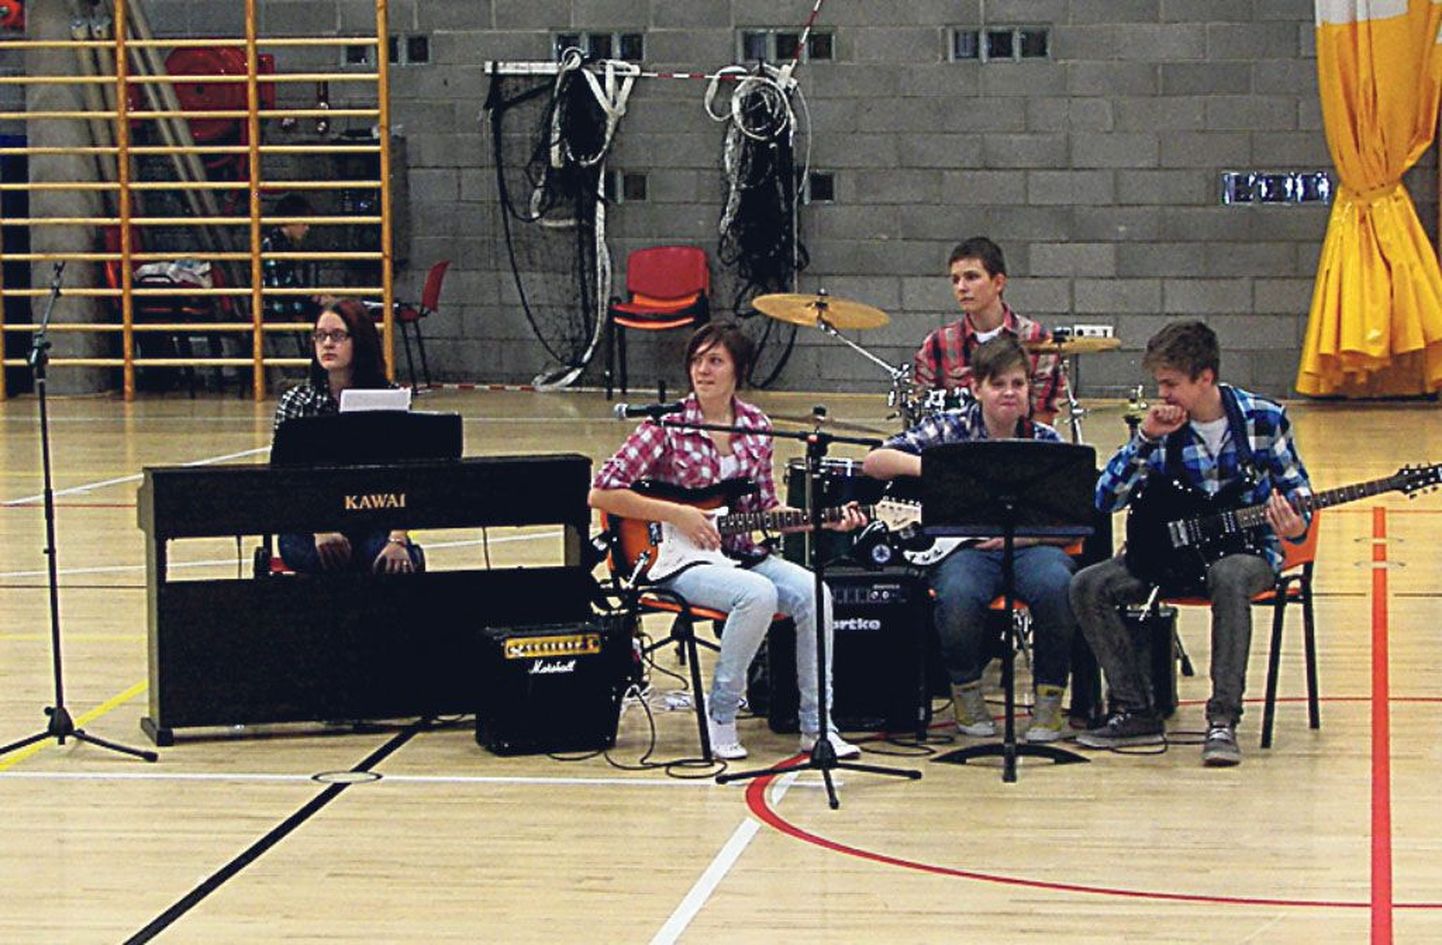 Koolimuusikaliks loodud bänd saatis soliste, kes laulsid Karoliine Kurvitsa (vasakult teine) kirjutatud laule.